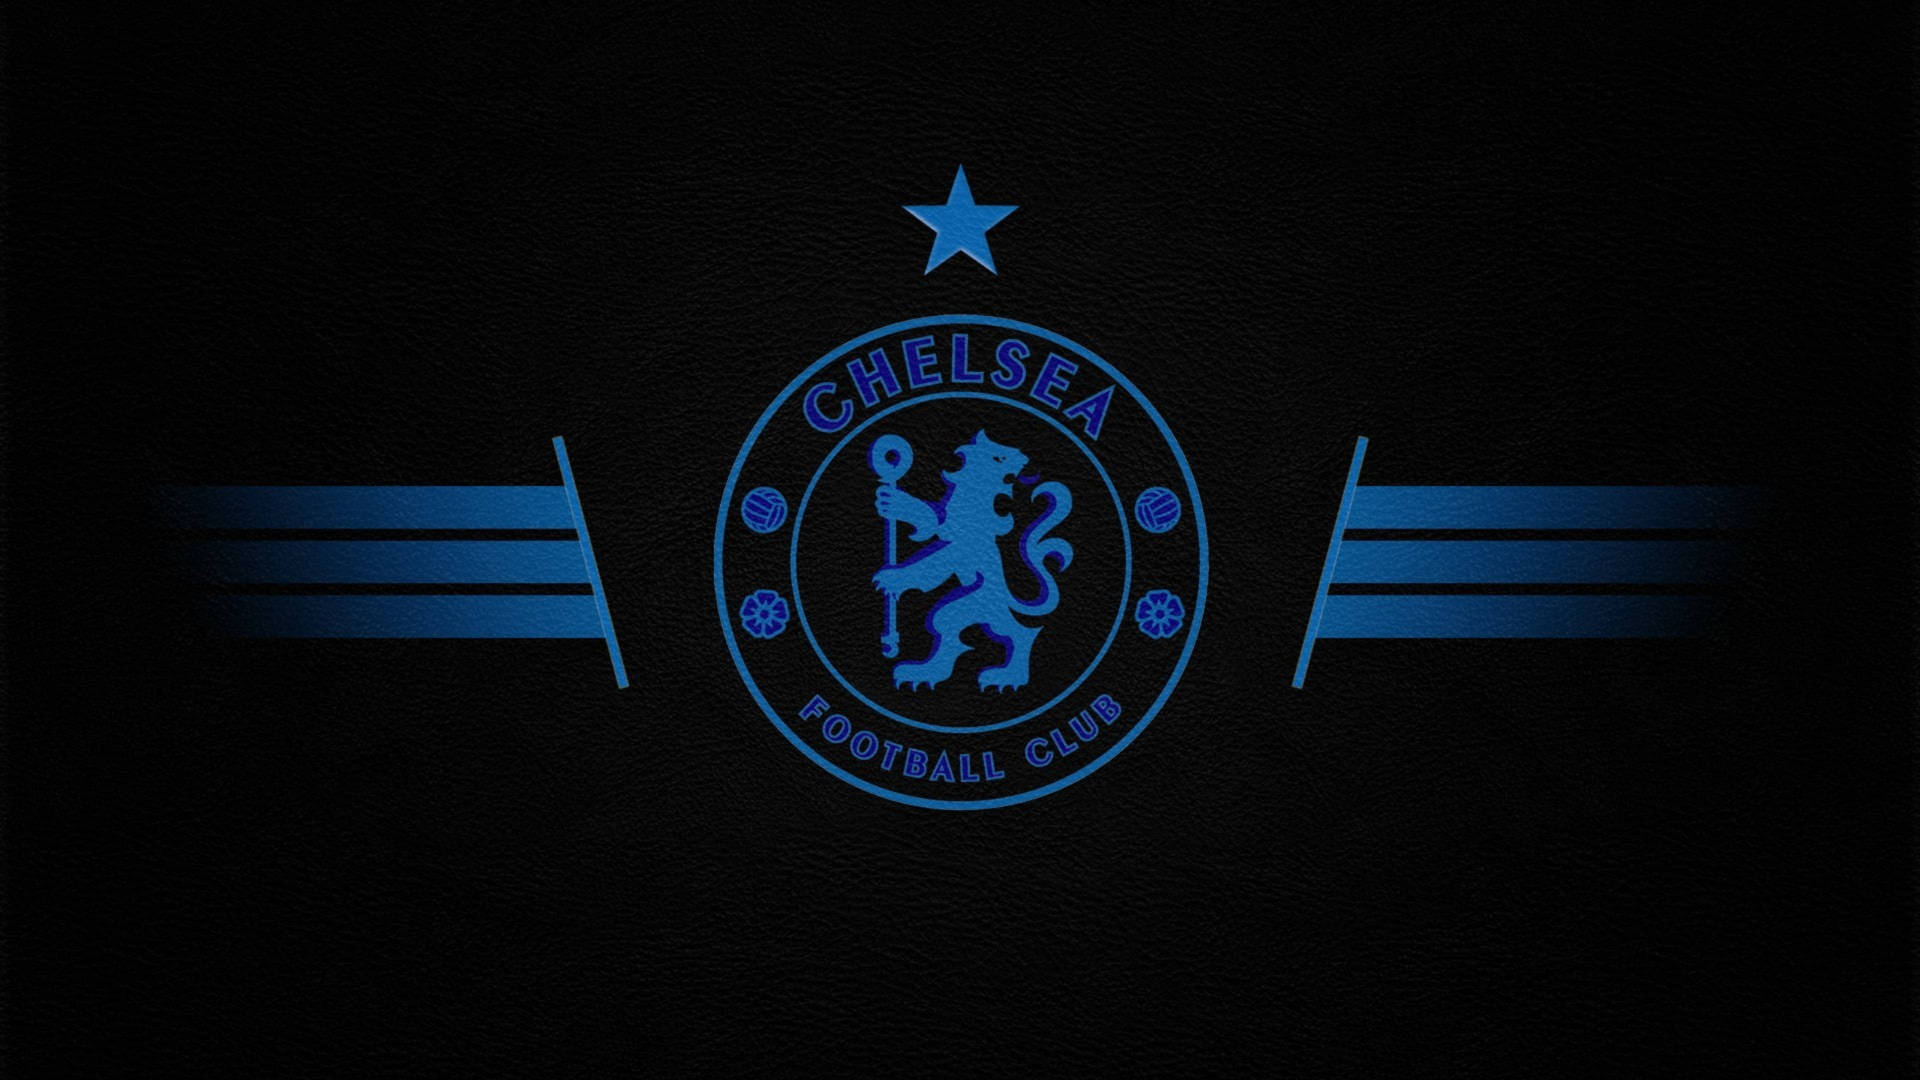 Premier League Chelsea F.C. Emblem Wallpaper